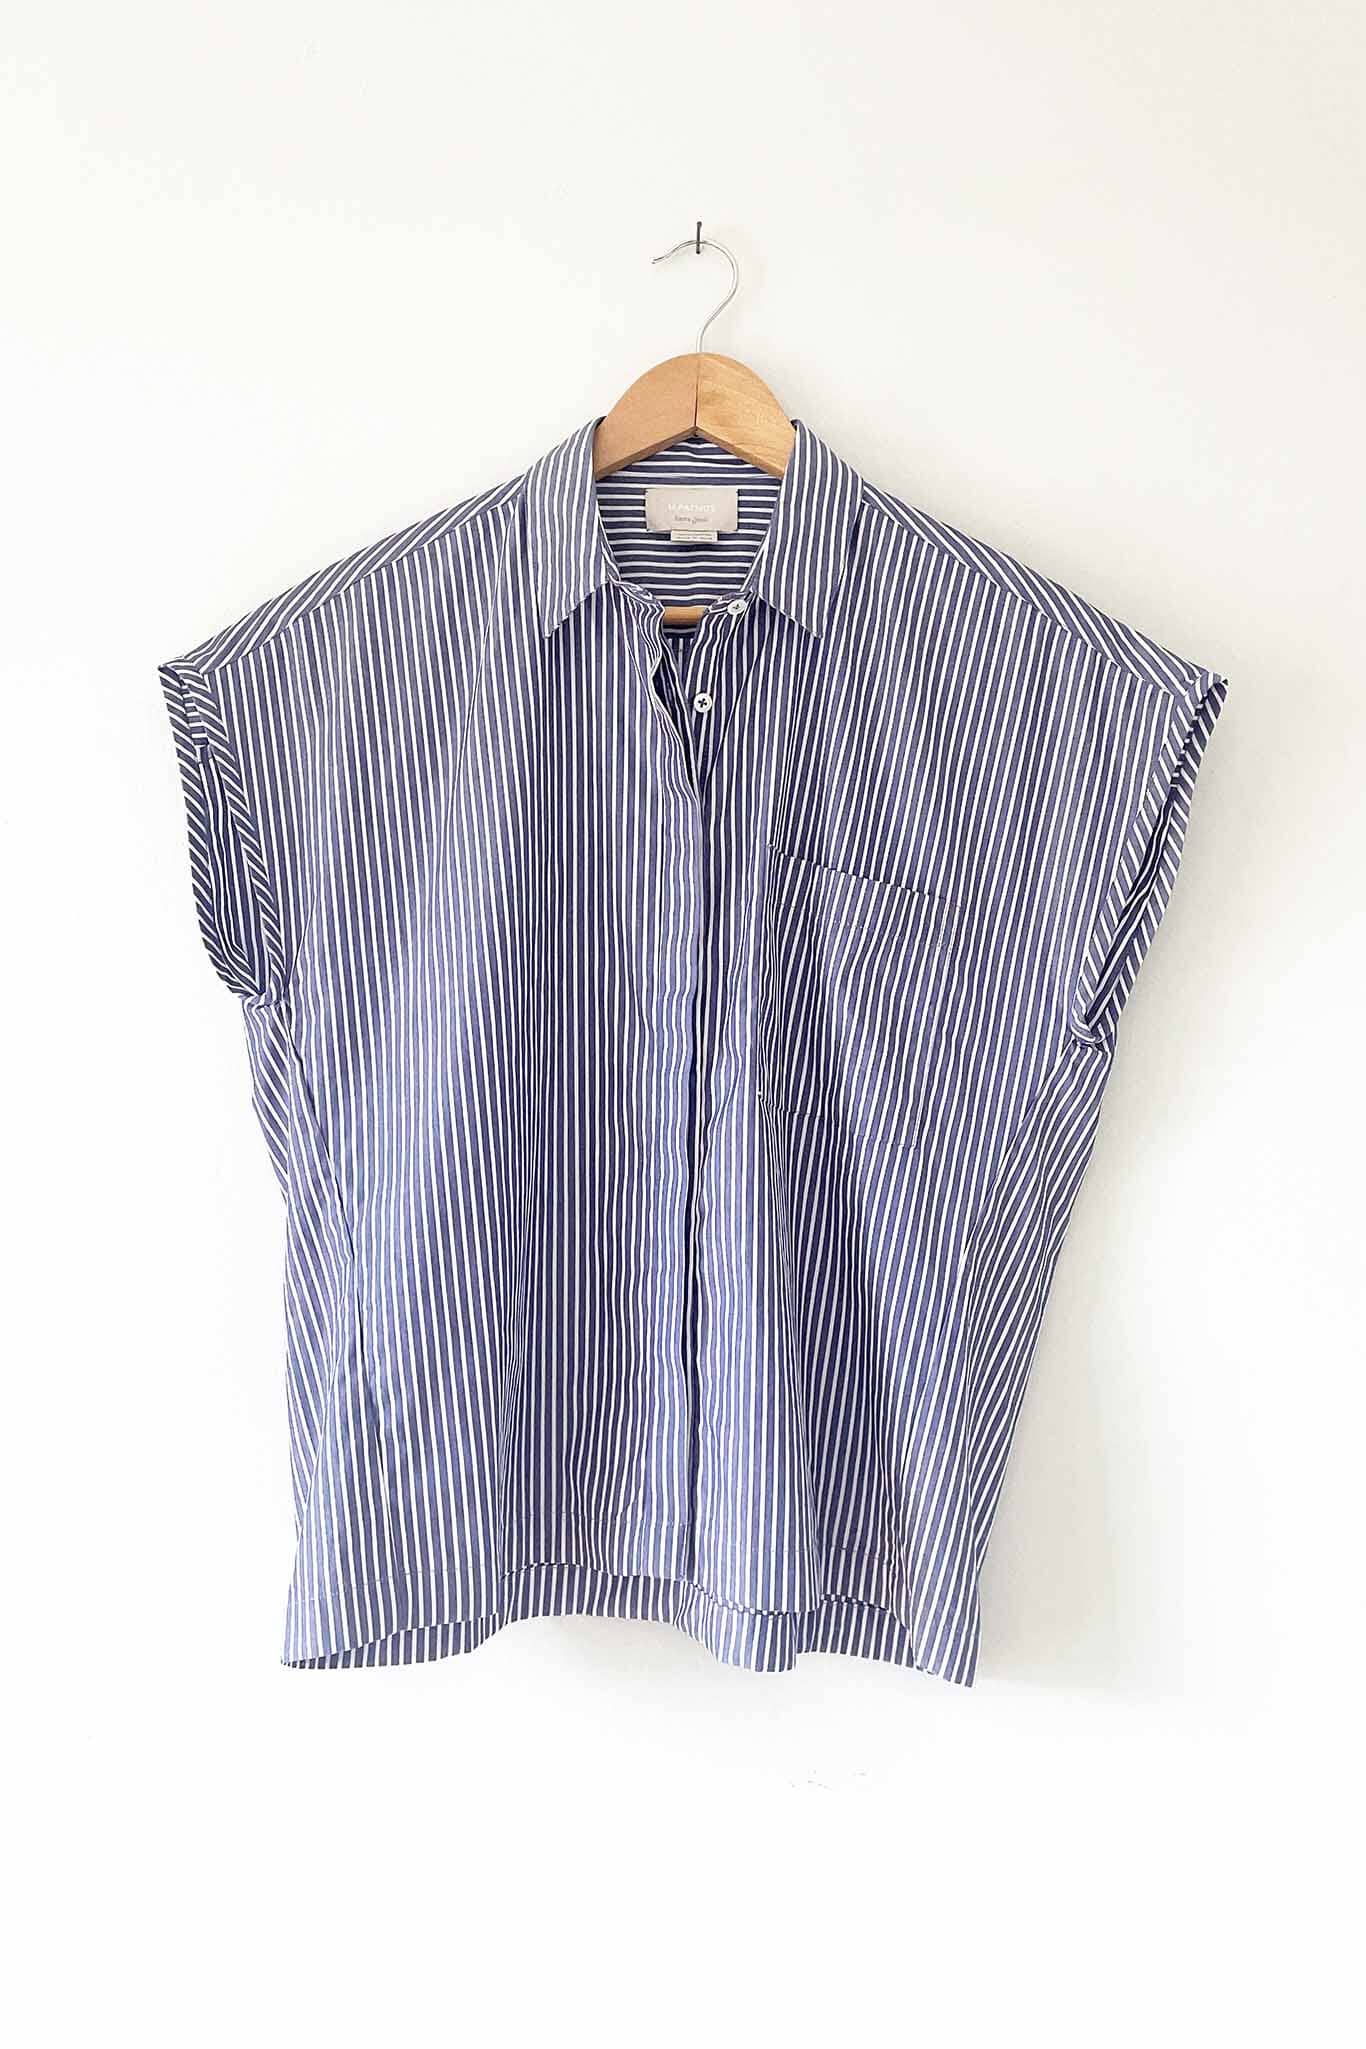 Best summer top. Sleeveless button down cotton shirt.